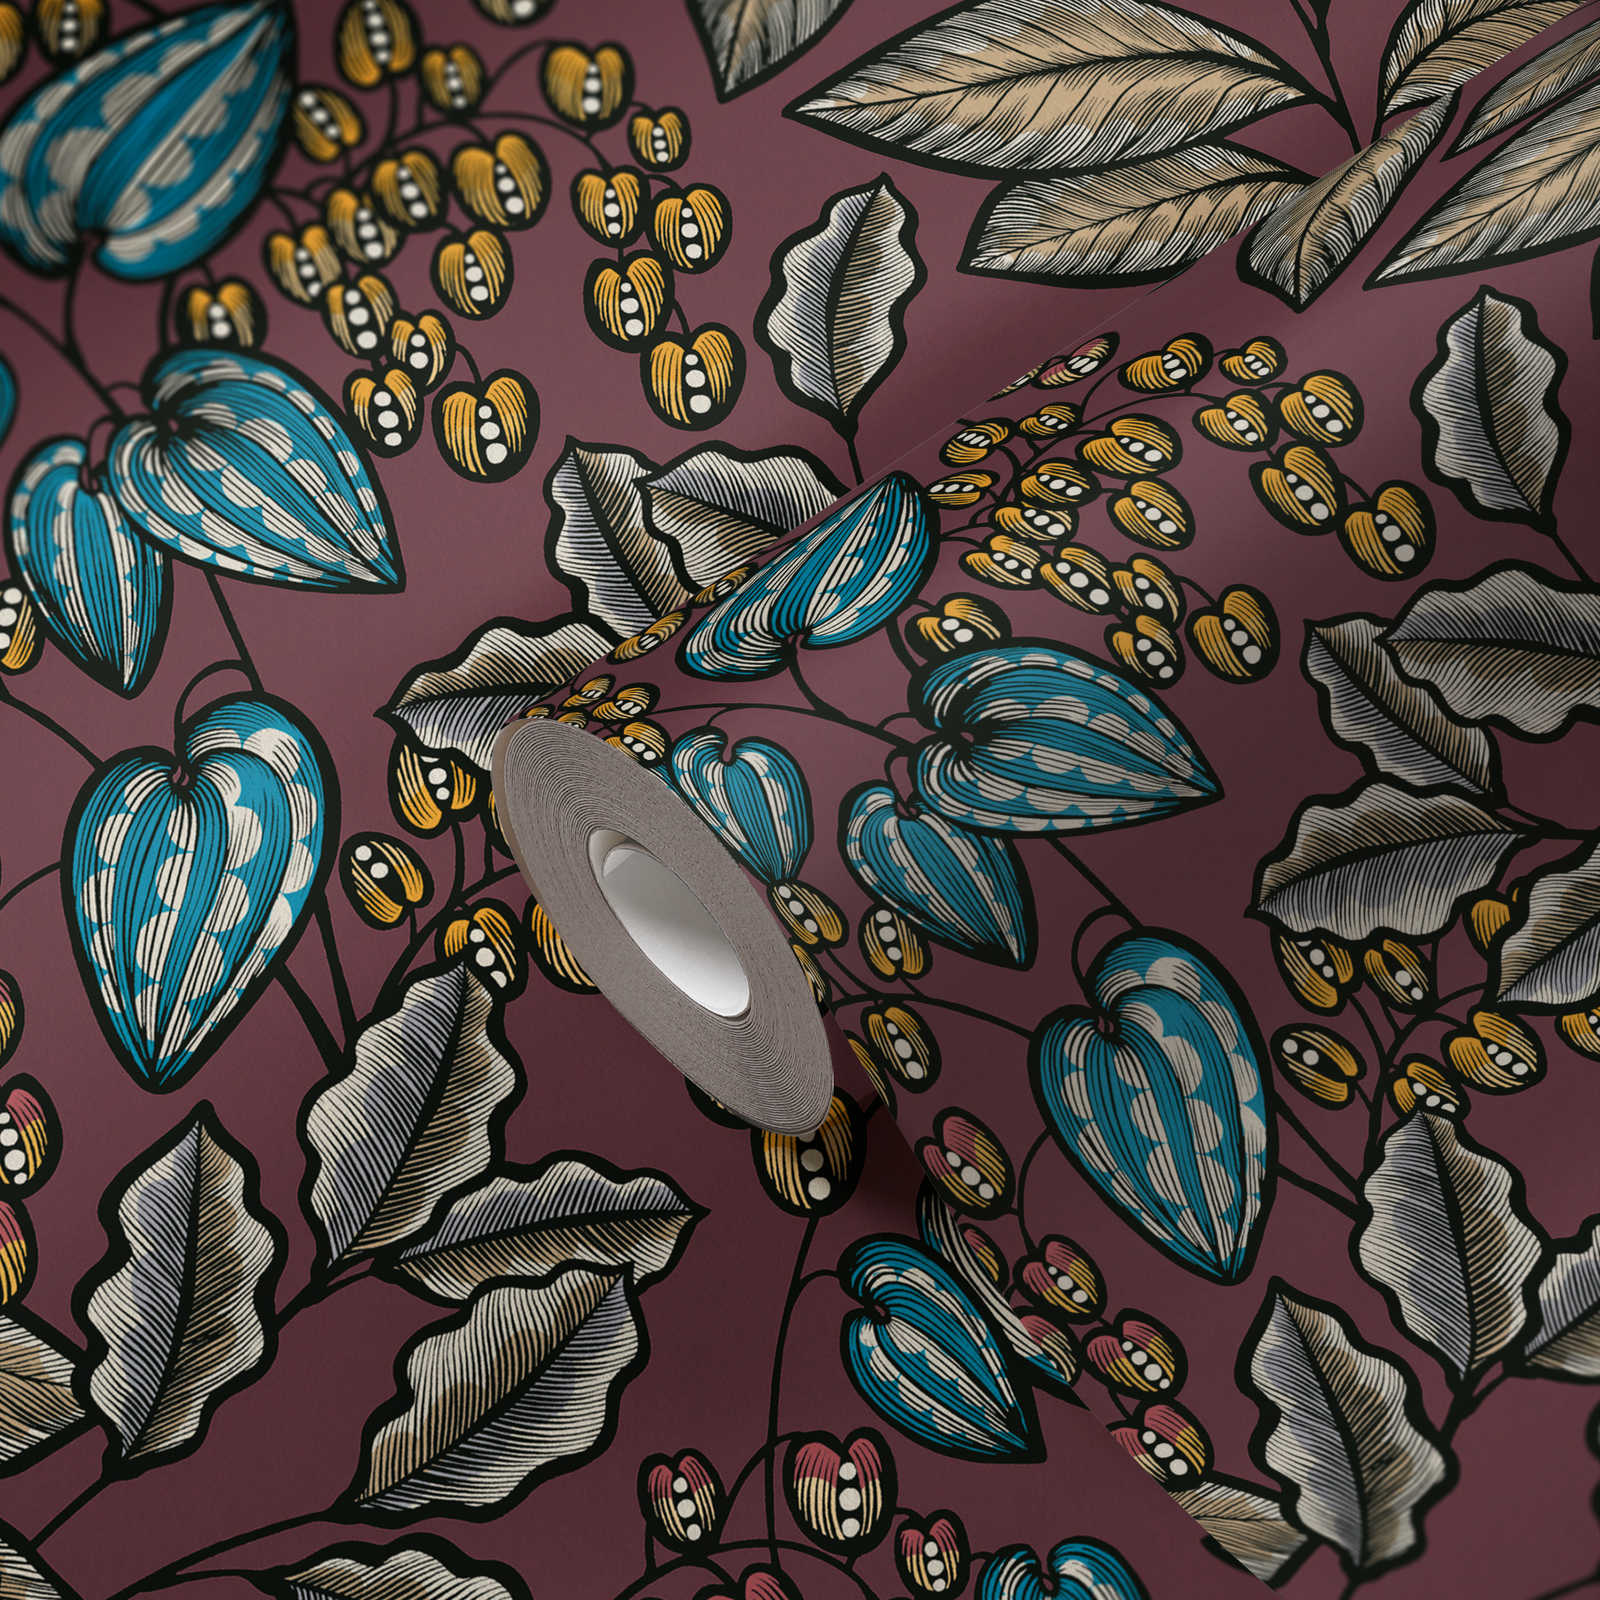             Bloemenbehang paars met bladerenprint in Scandinavische stijl
        